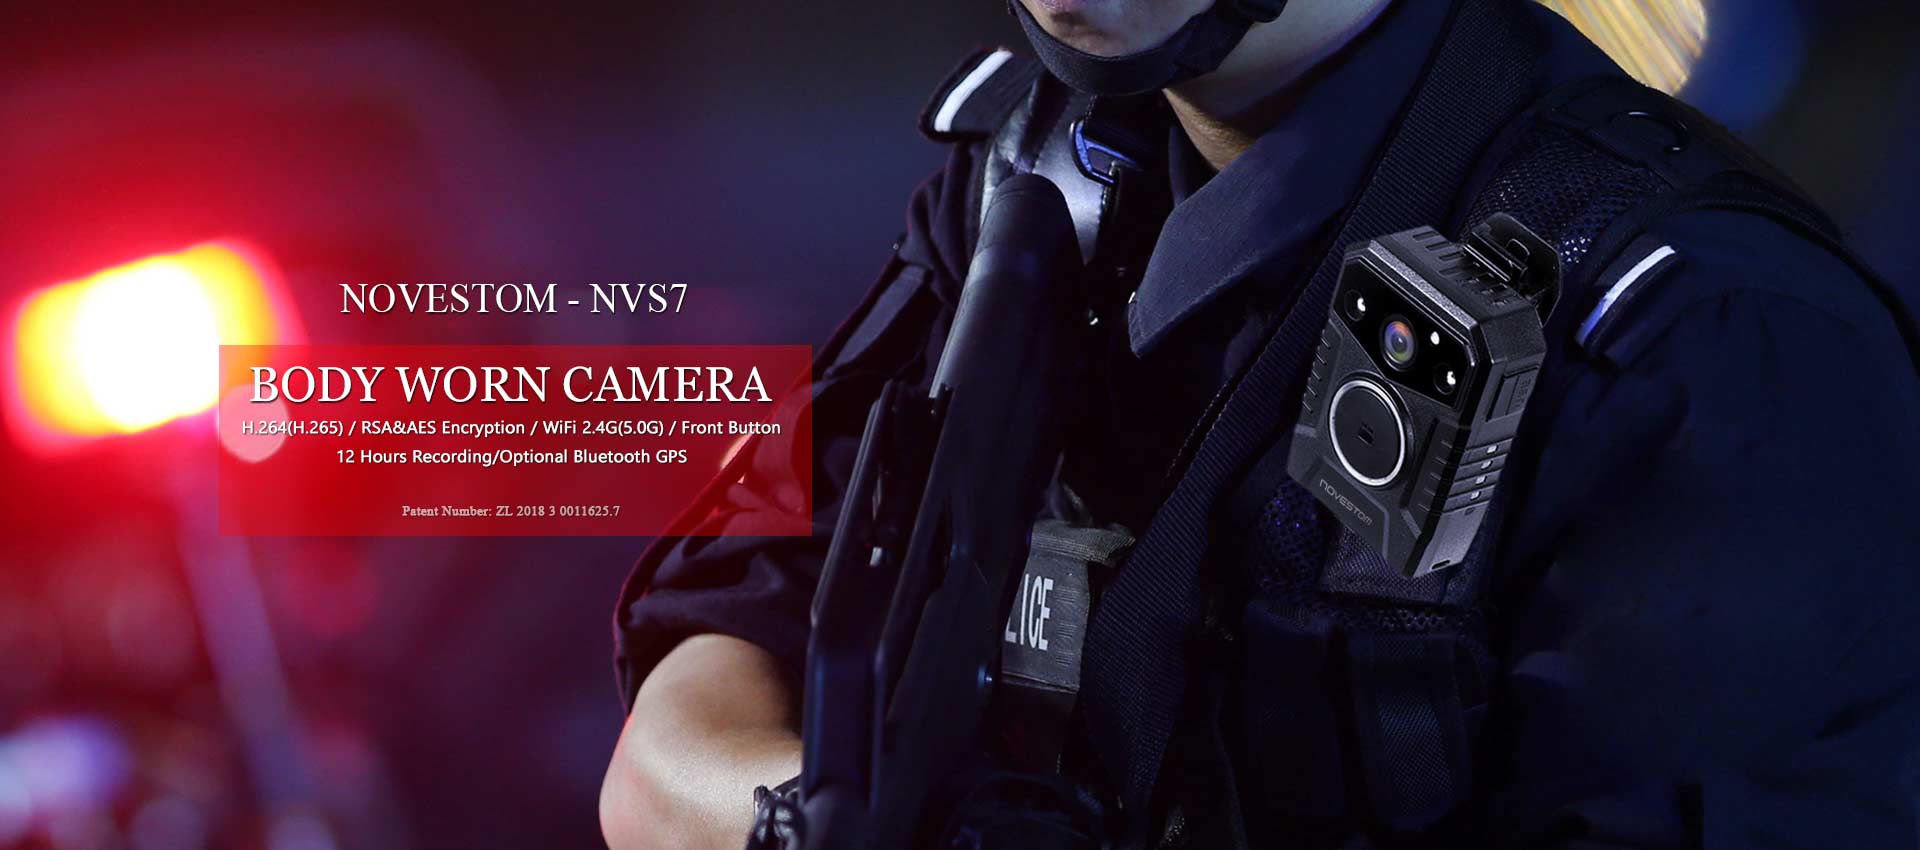 NVS7 wifi policijas stila korpusa nēsātas videonovērošanas kameras ar GPS AES